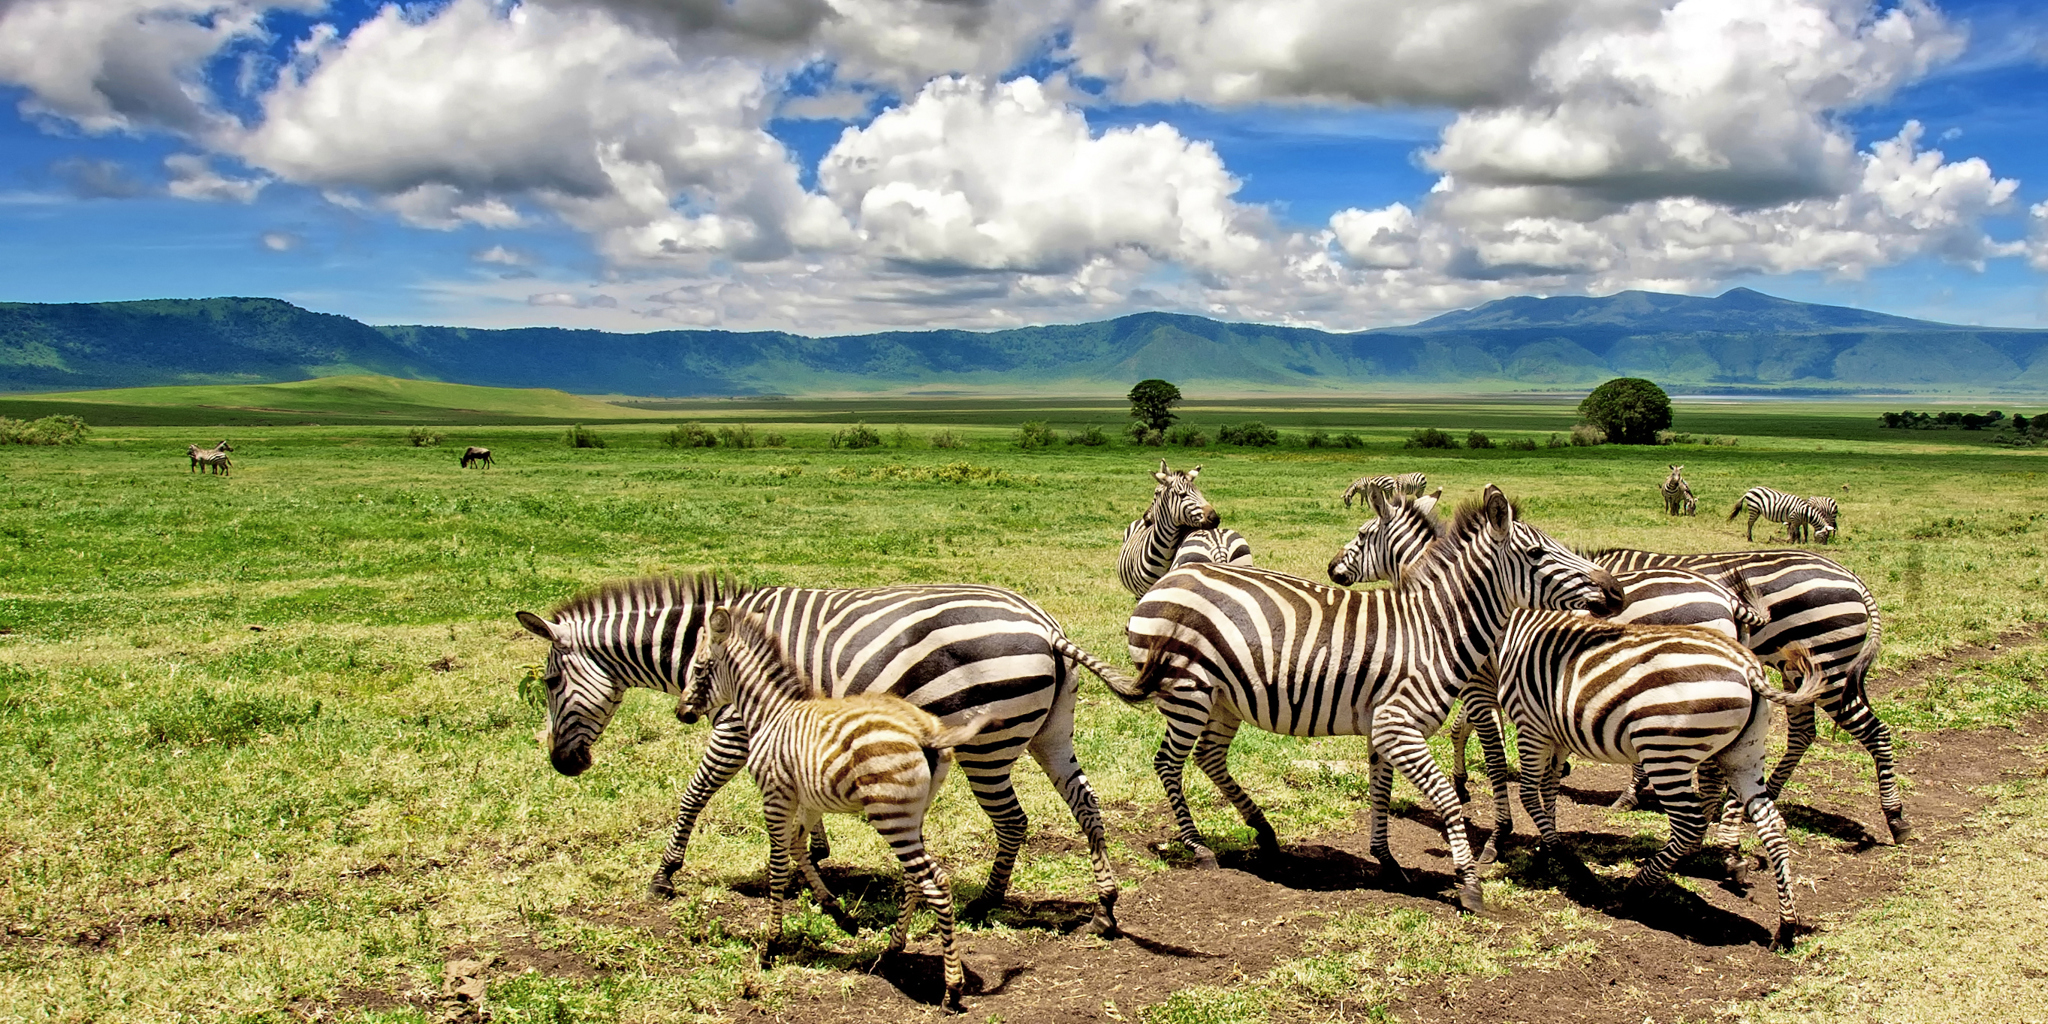 Game drive safaris in Ngorongoro Crater, Tanzania